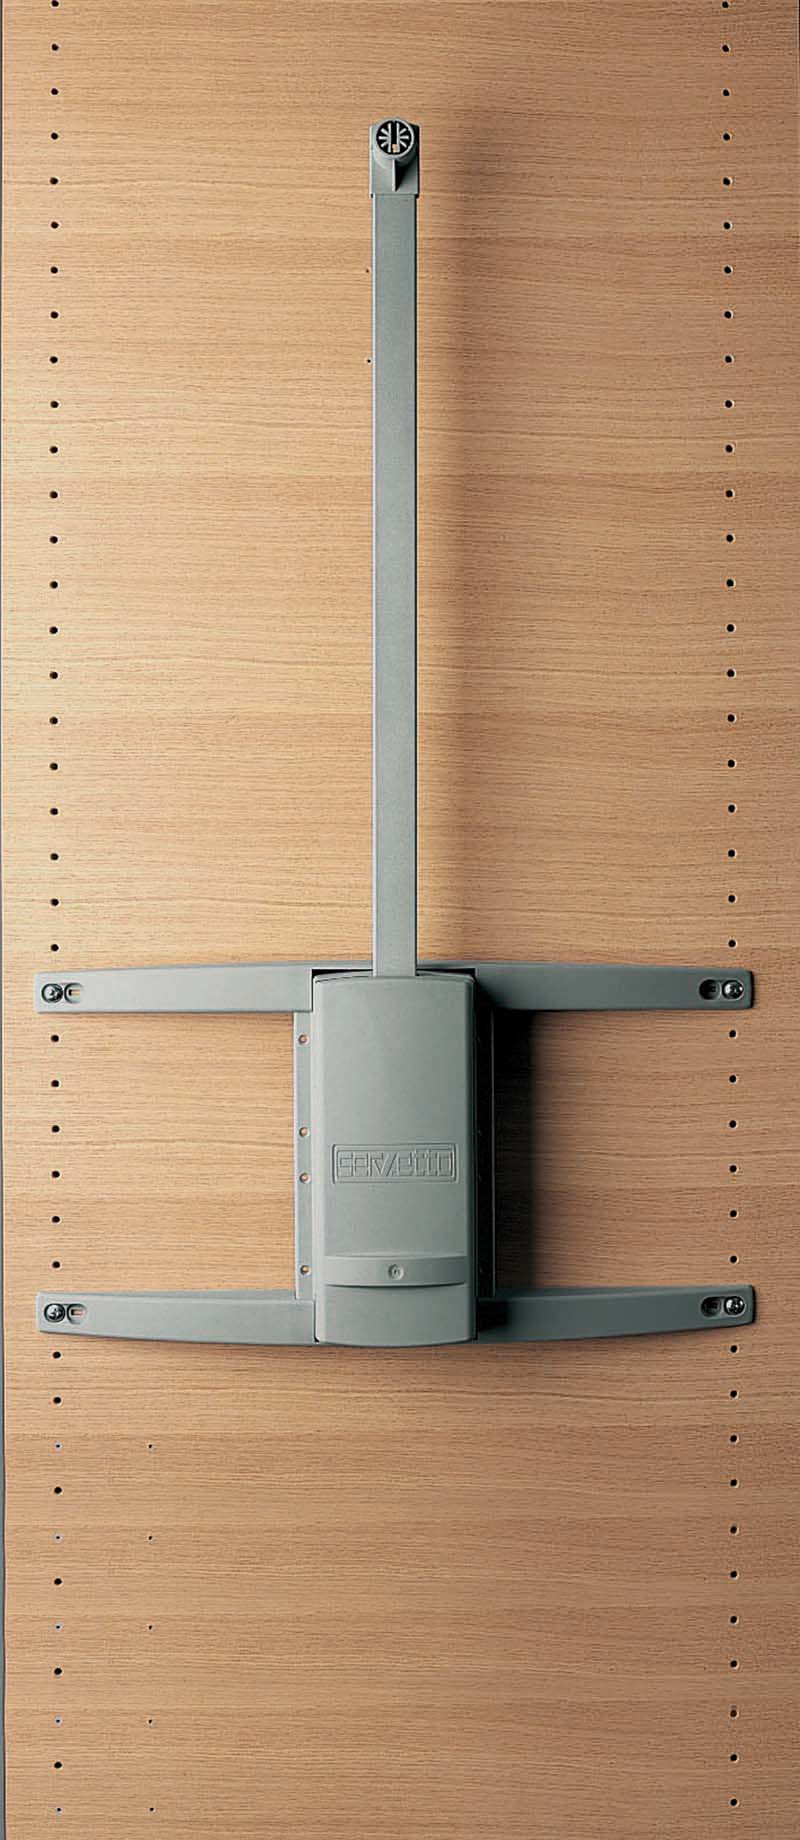 Saliscendi - Servetto - L'ascensore nell'armadio